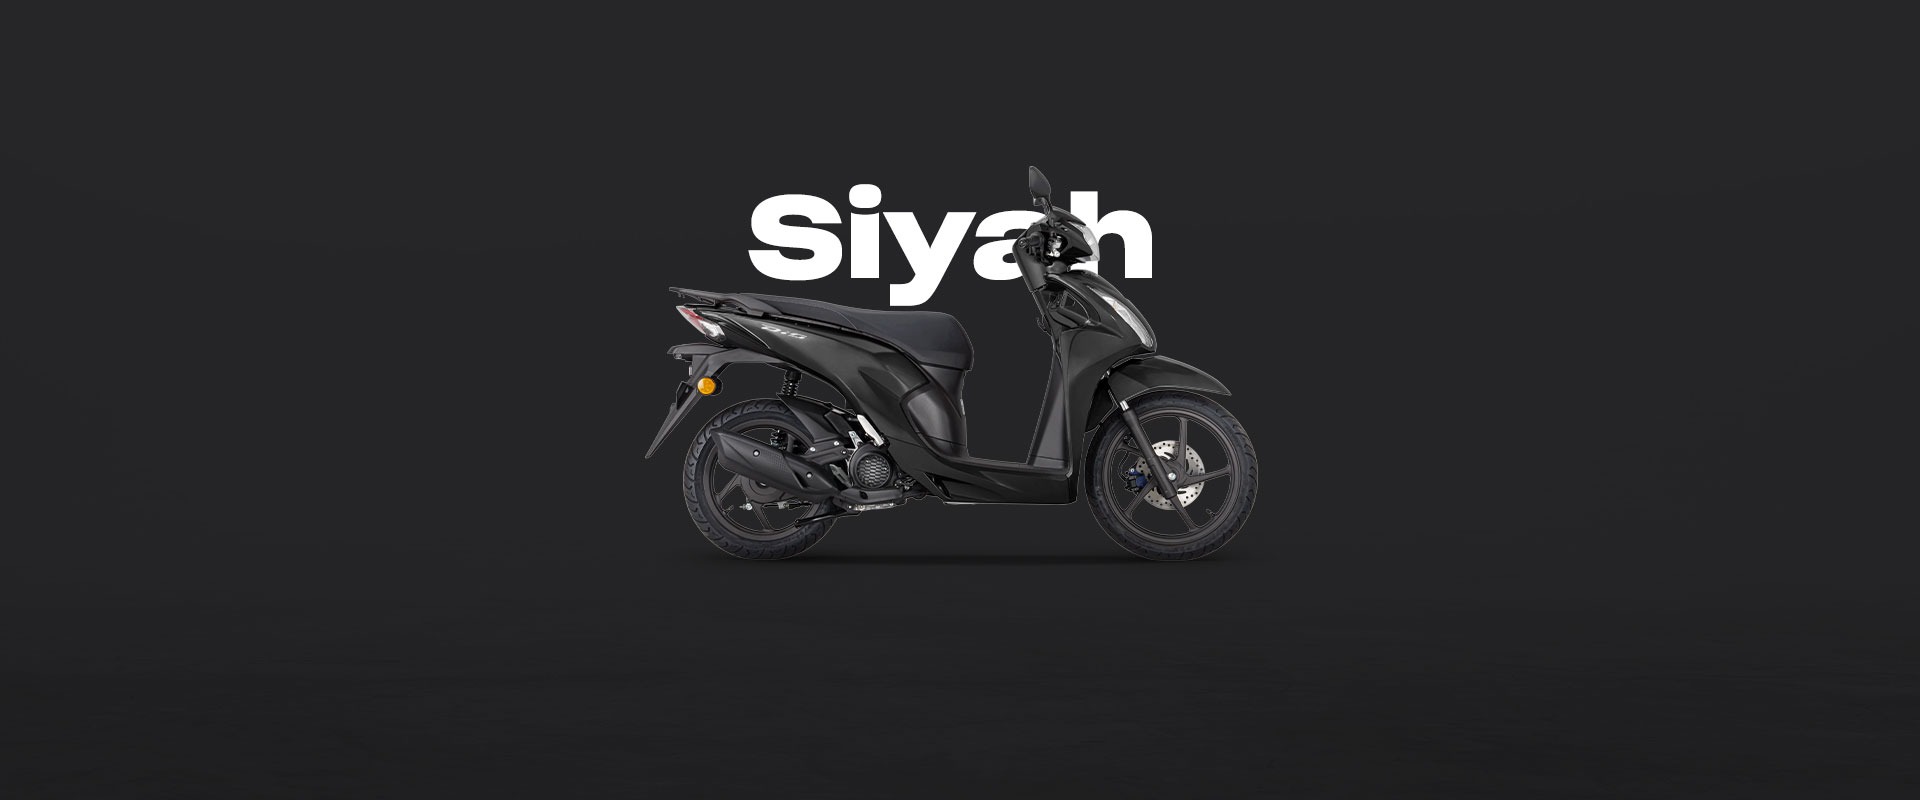  Honda Aysan Siyah <br /> Mat Galaxy Black Metallic <br /> (NH A76M)